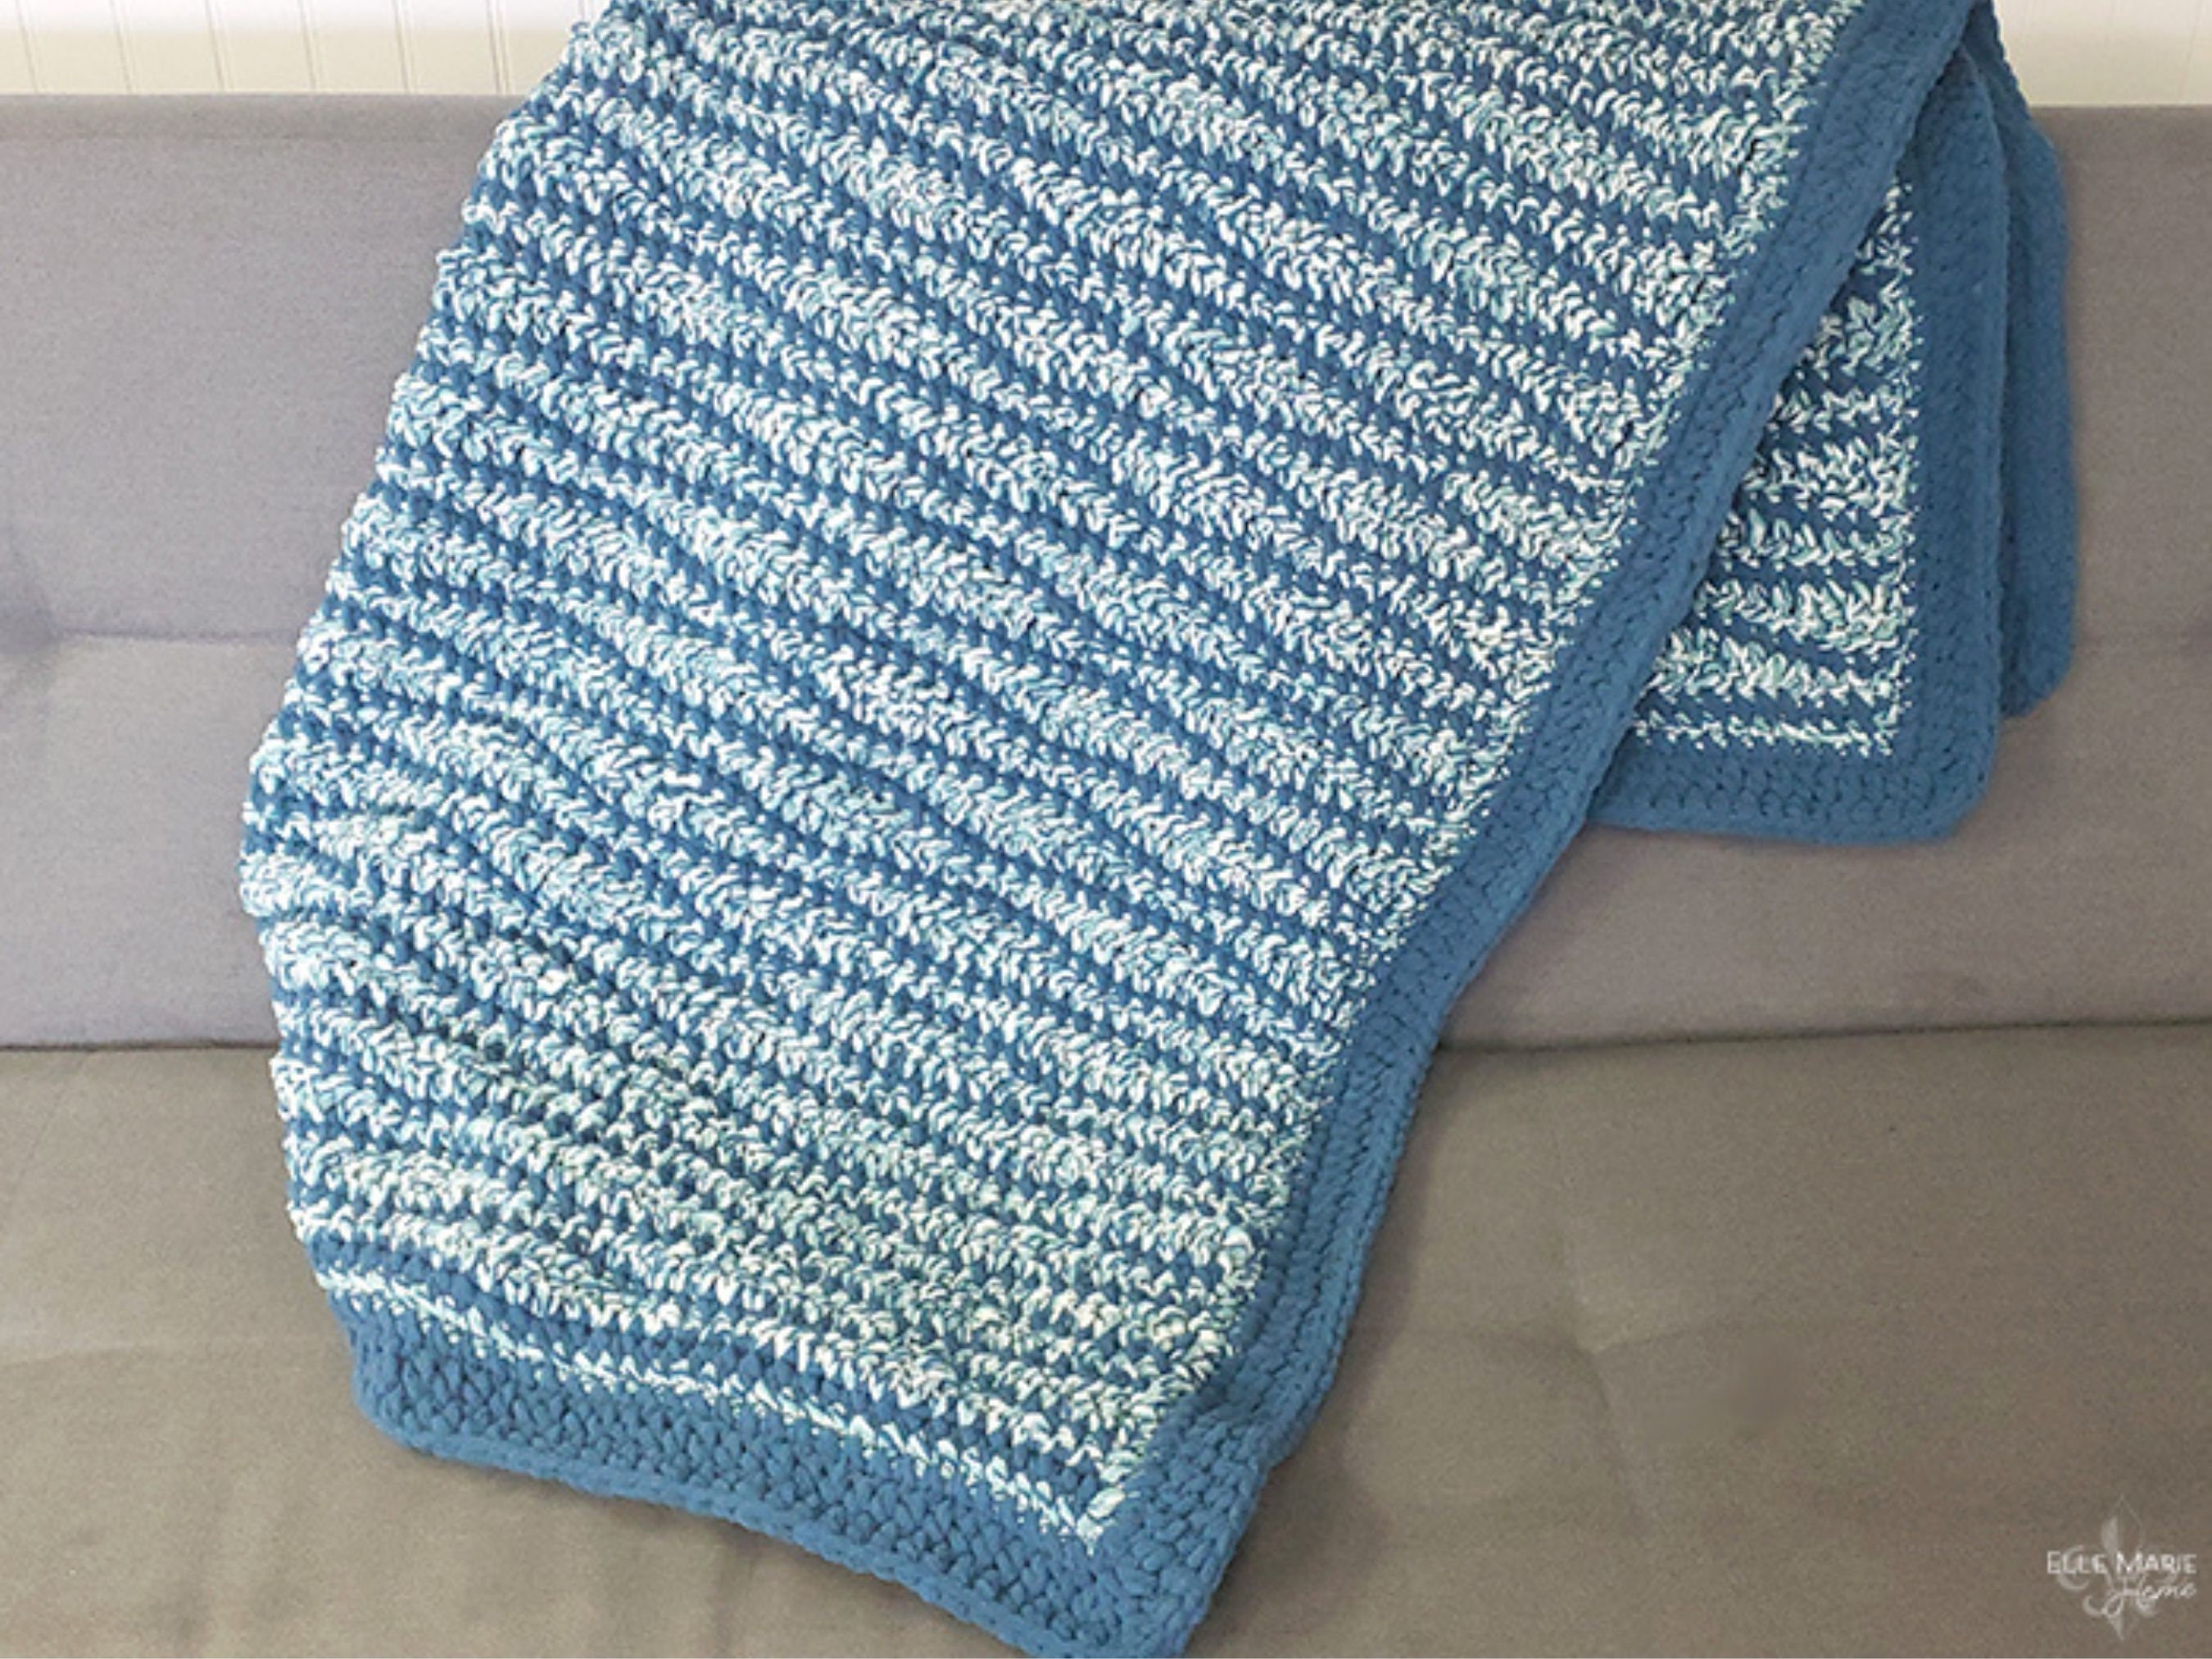 Bernat Blanket Yarn 3 Skeins, 2 Oceanside, 1 Teal 